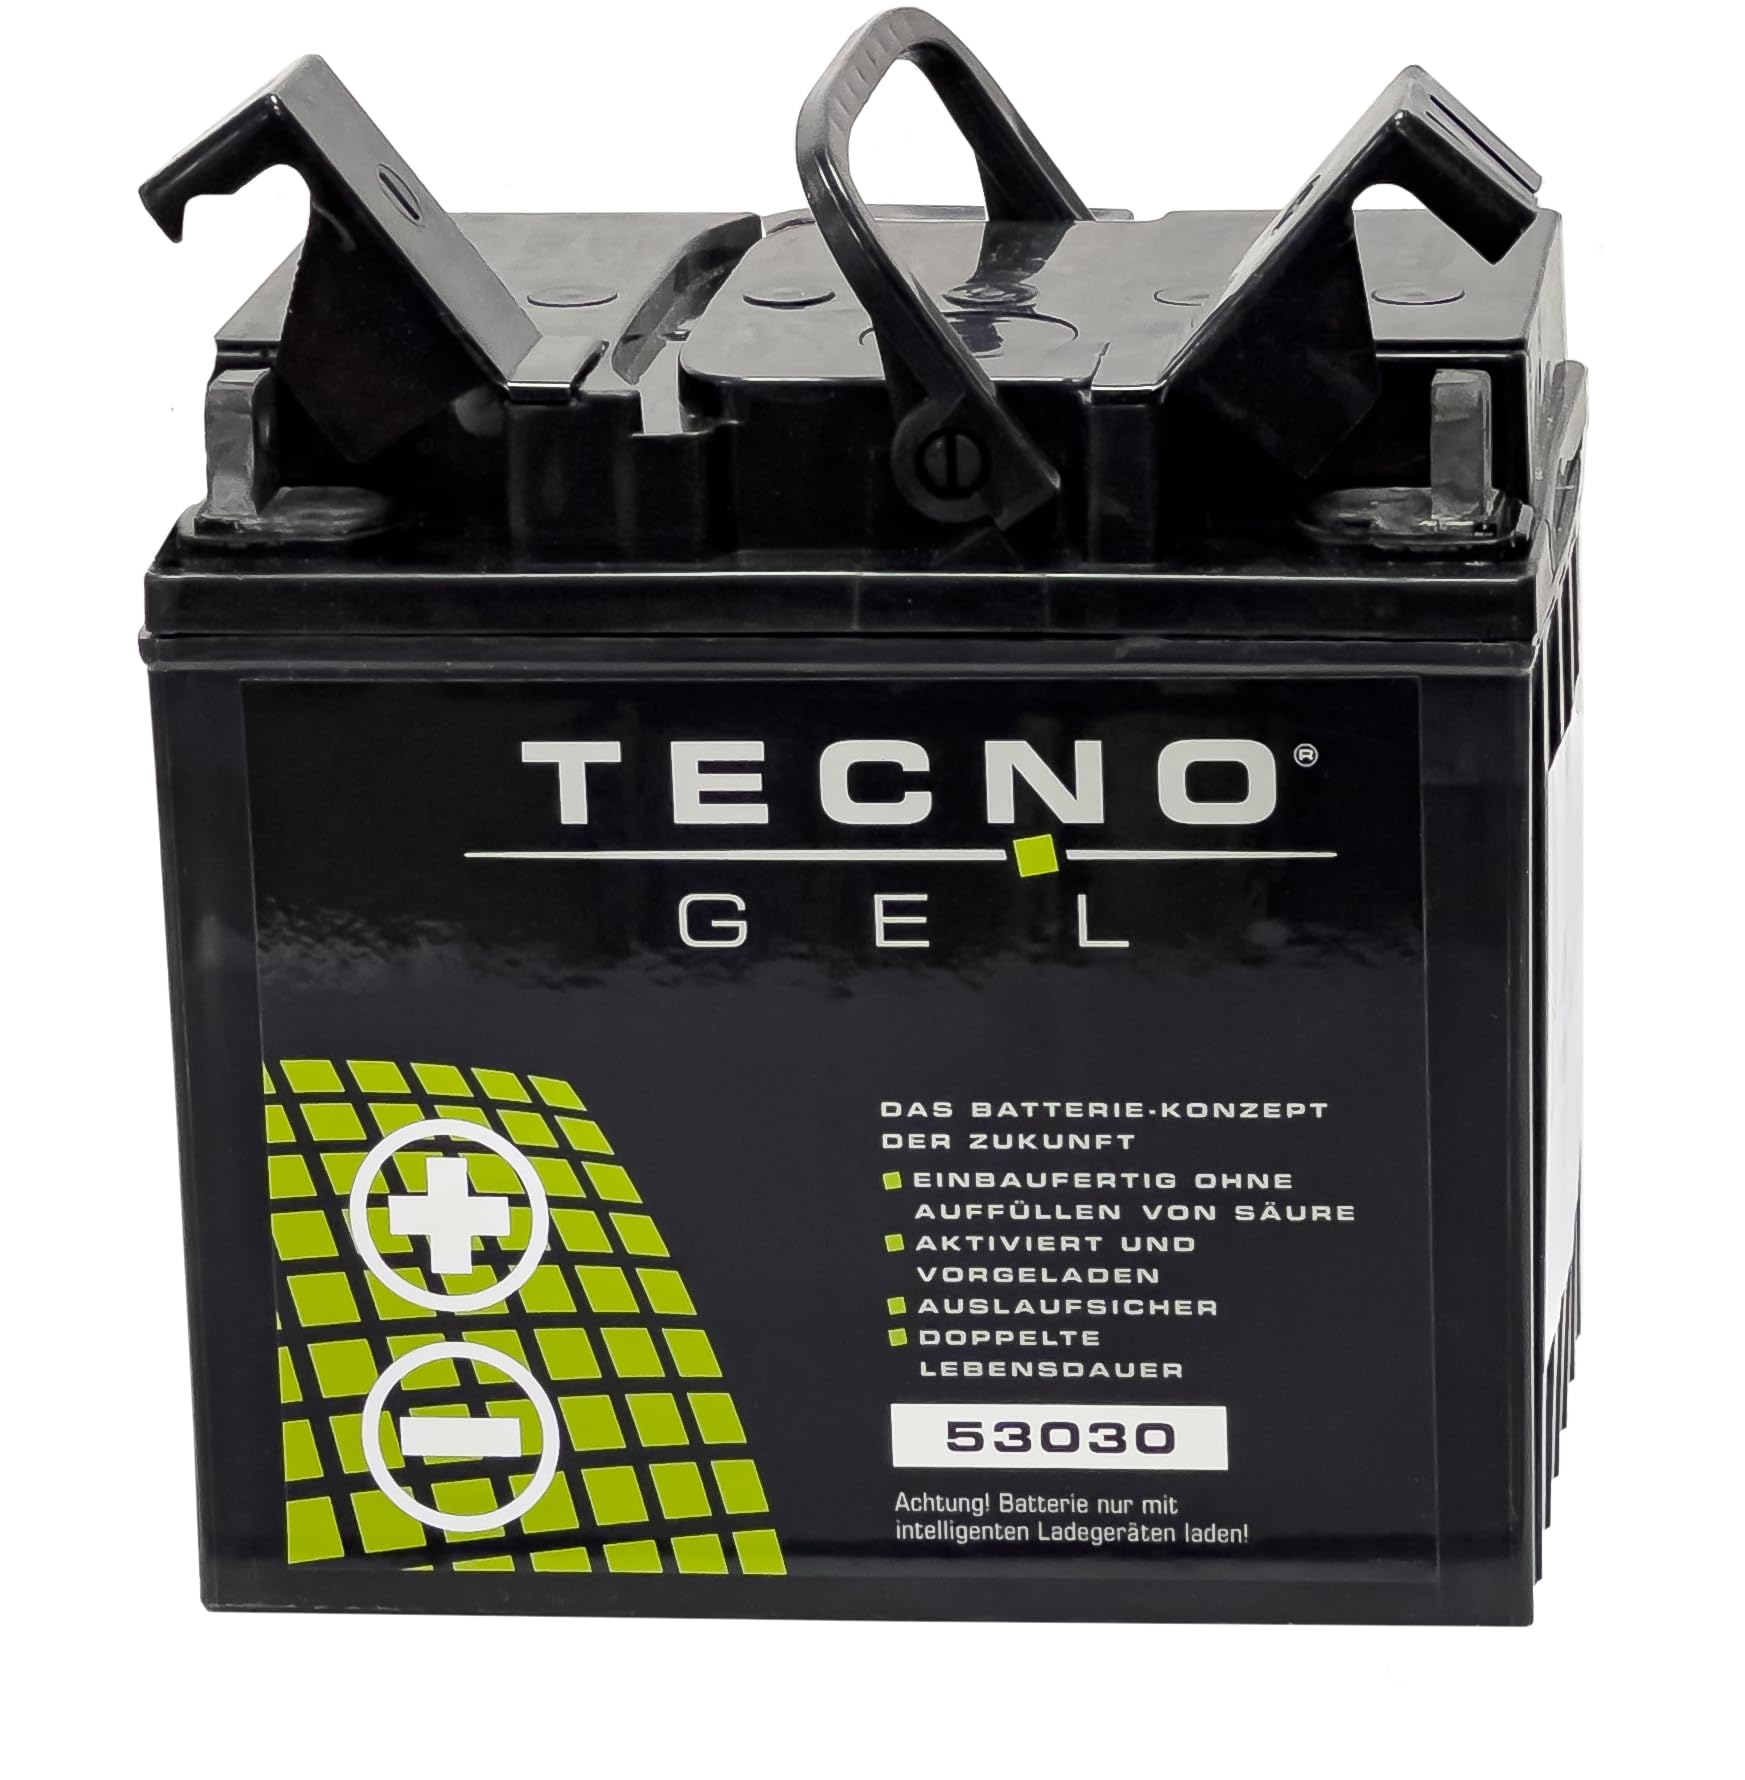 TECNO-GEL Motorrad Qualitäts Batterie 53030 für MOTO GUZZI T 850, T3, T4, T5 1973-1989, 12V Gel-Batterie 30Ah, 187x130x170 mm von Wirth-Federn